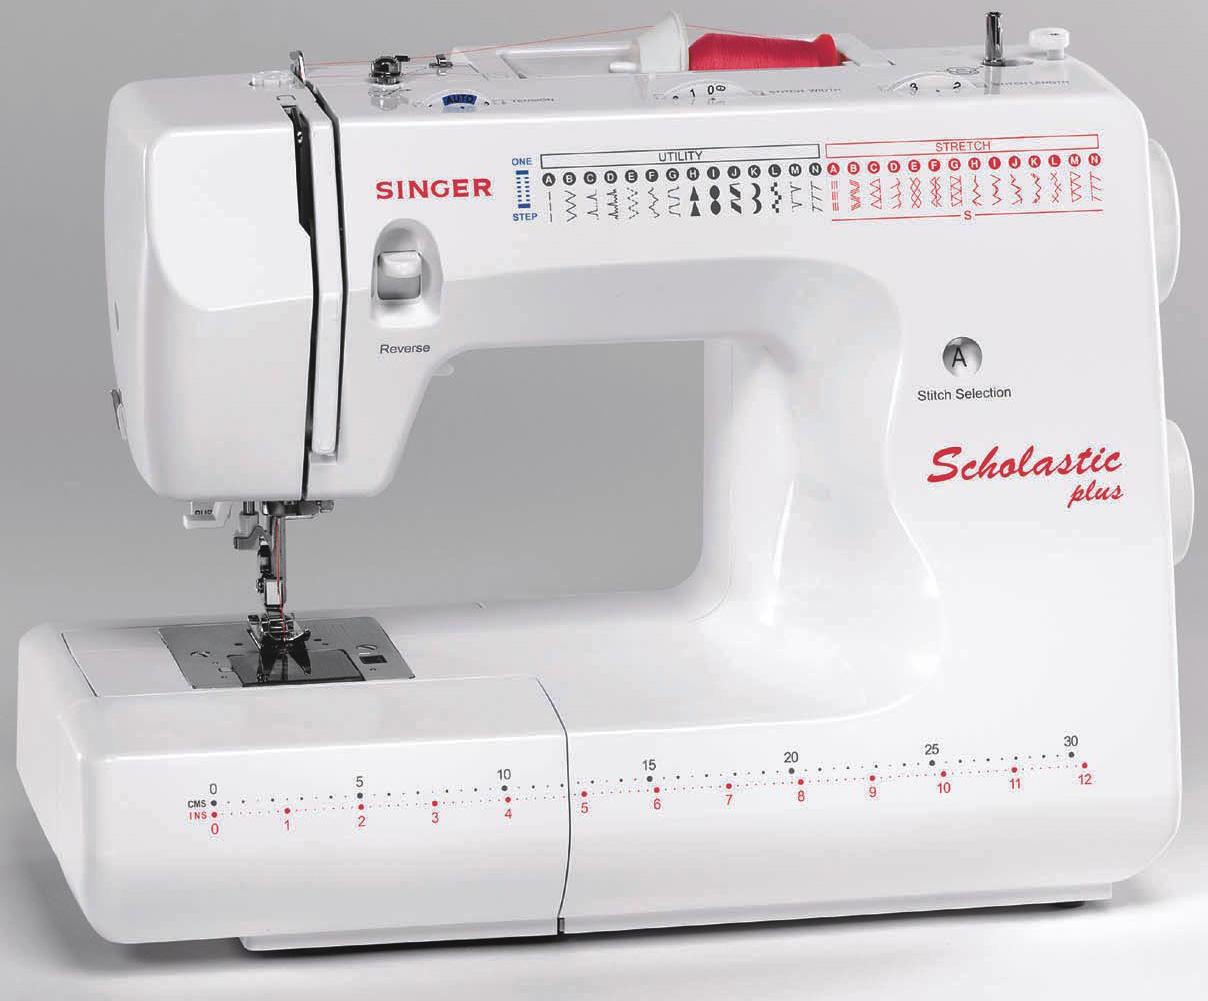 Singer Scholastic Plus 6550 Sewing Machine